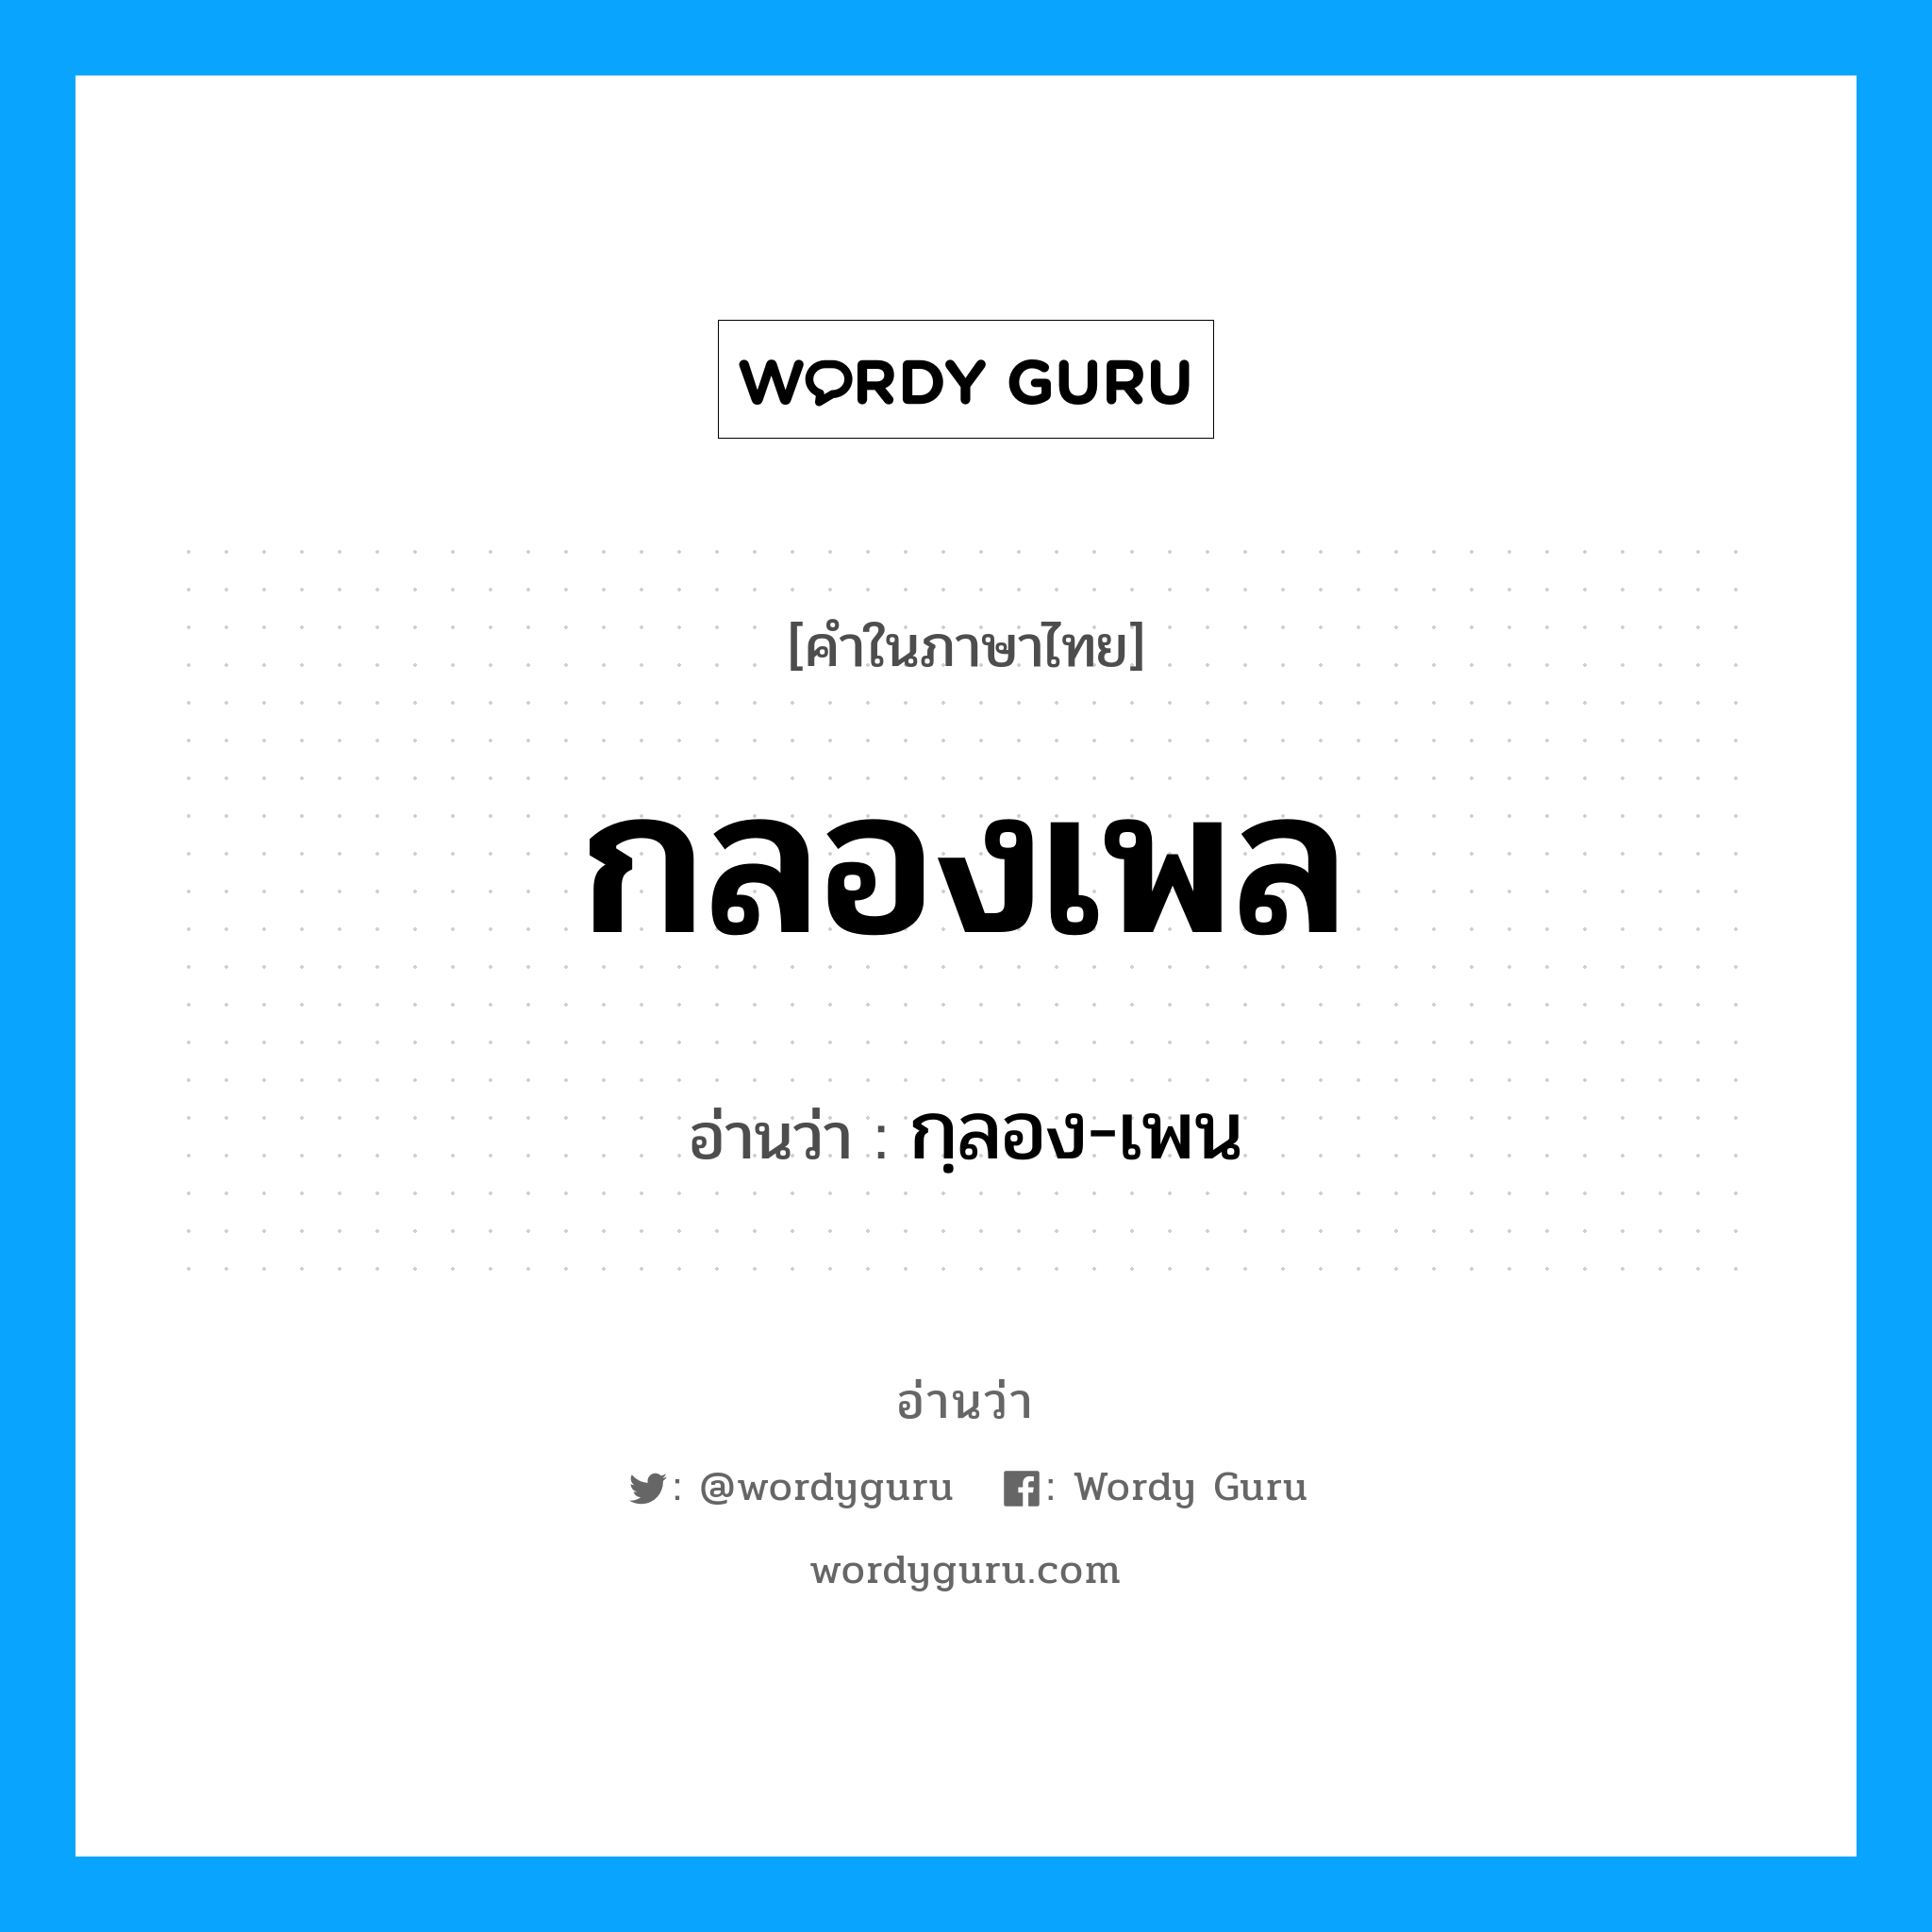 กฺลอง-เพน เป็นคำอ่านของคำไหน?, คำในภาษาไทย กฺลอง-เพน อ่านว่า กลองเพล